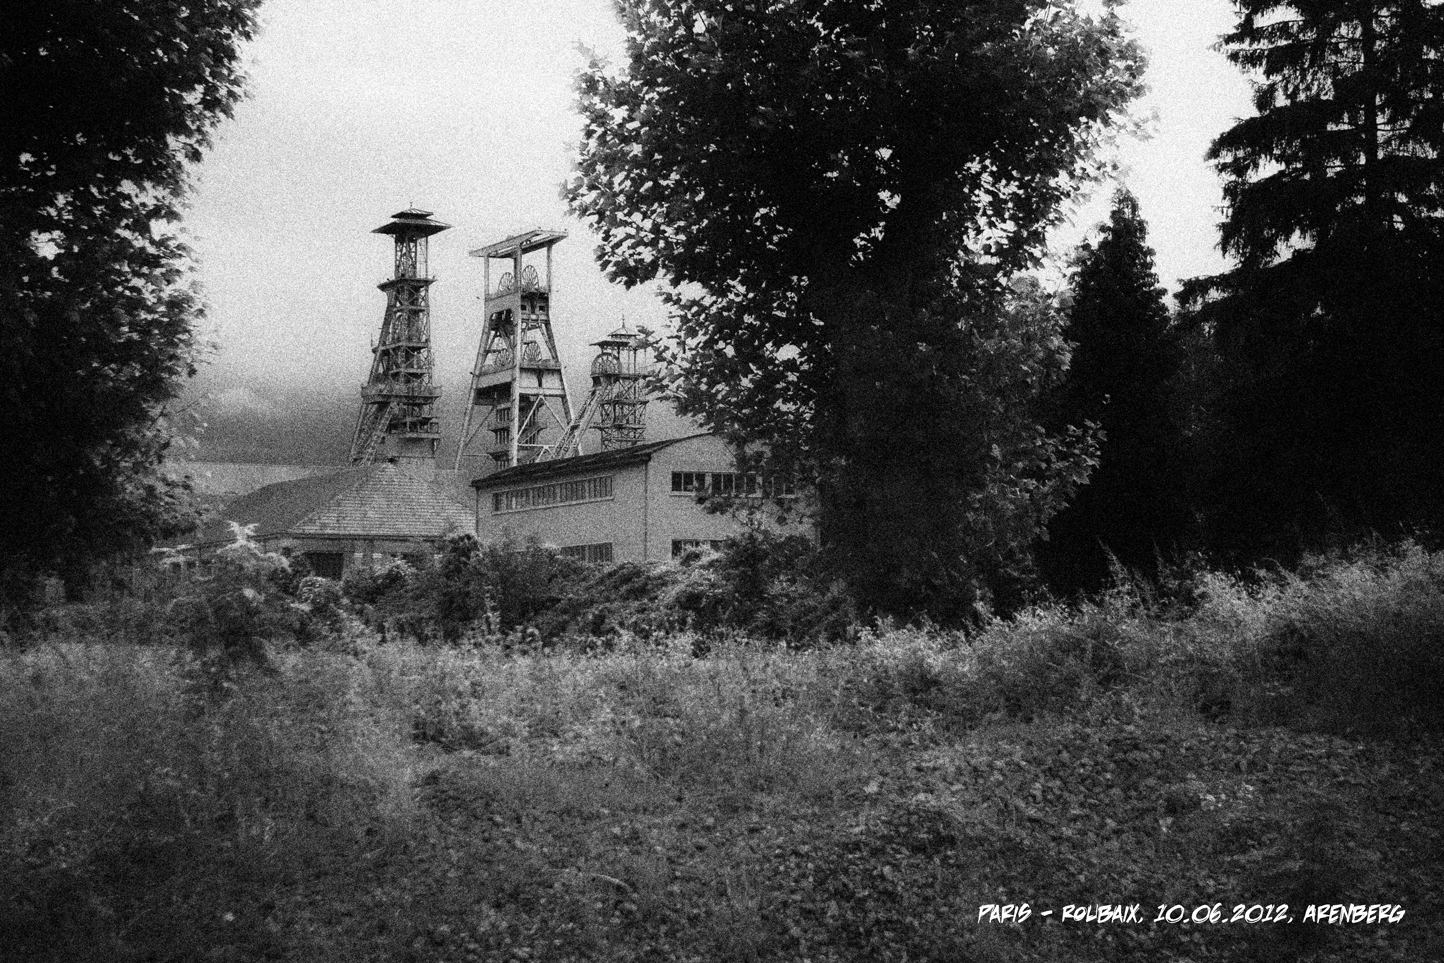 Arenberg, historischer Bergbau, No.01